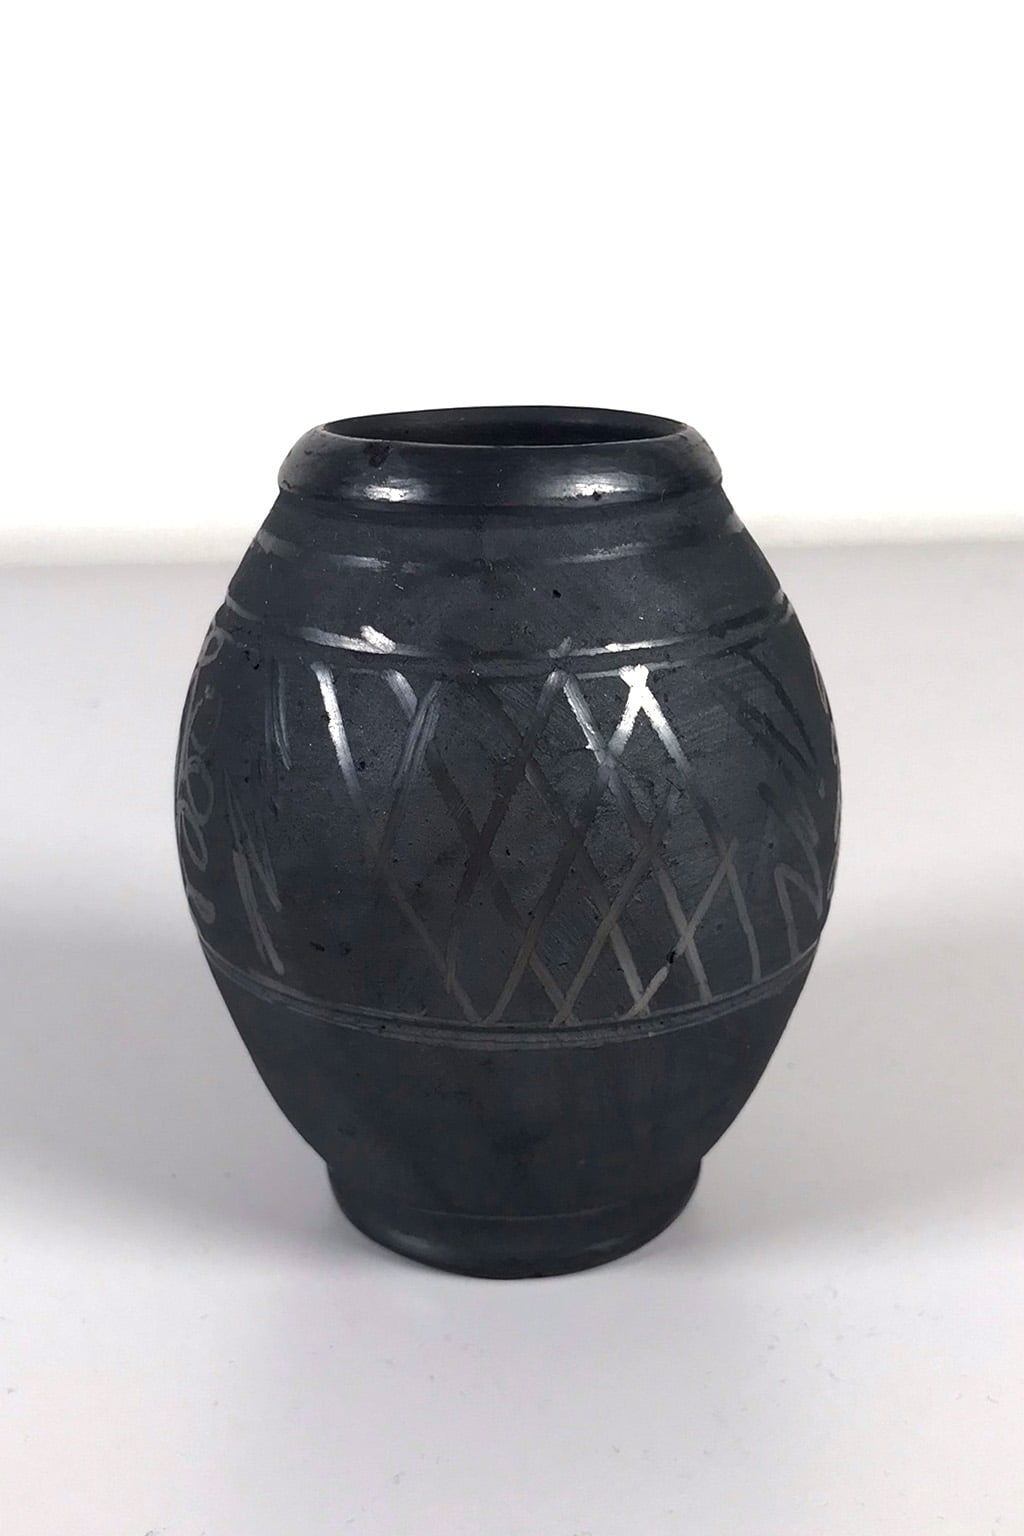 Decorated vase